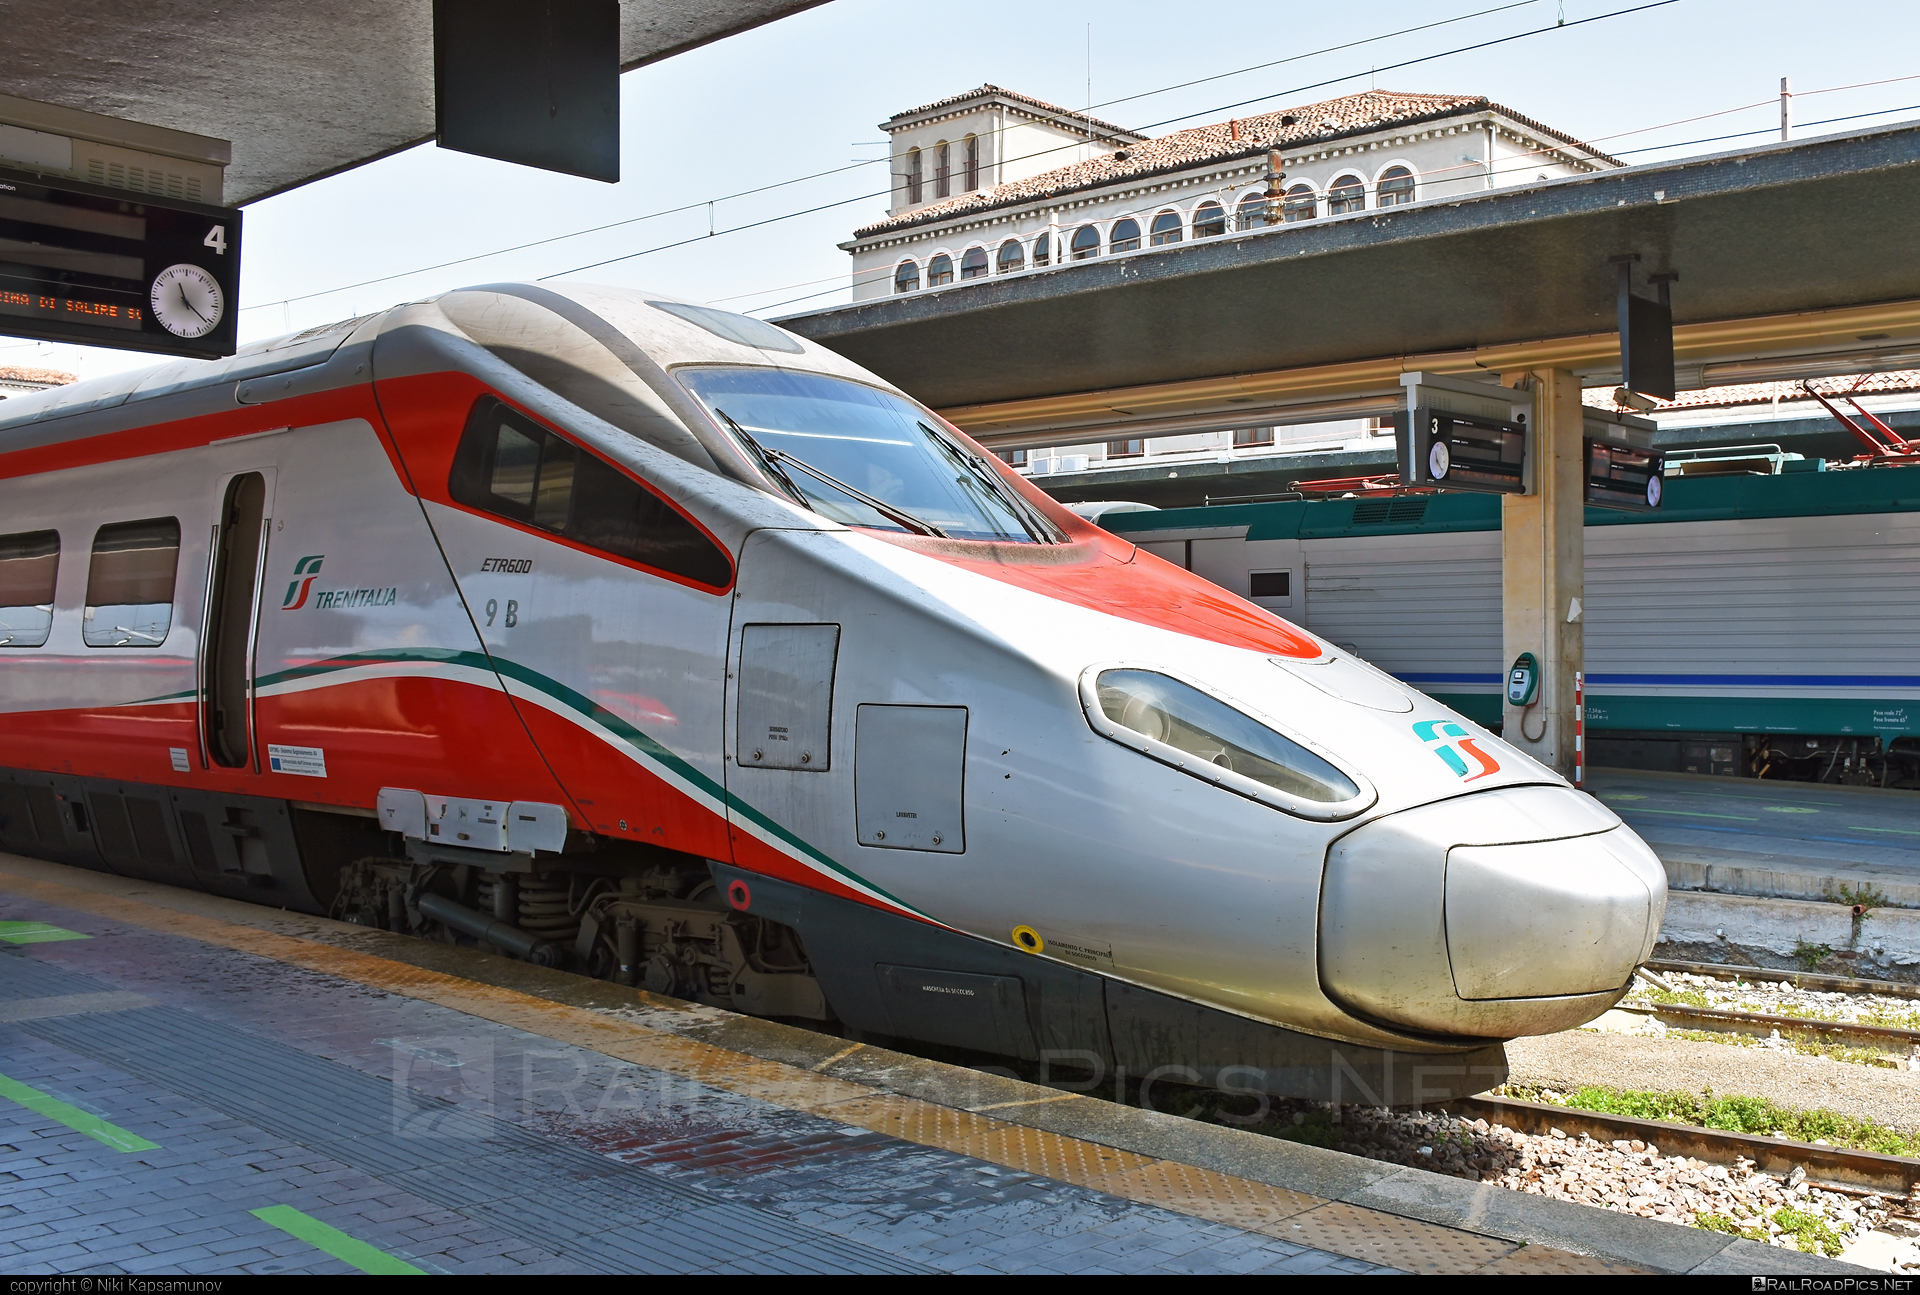 Alstom Class ETR.600 - ETR 600.09 operated by Trenitalia S.p.A. #alstom #alstometr600 #etr600 #ferroviedellostato #frecciargento #fs #fsitaliane #lefrecce #newpendolino #pendolino #trenitalia #trenitaliaspa